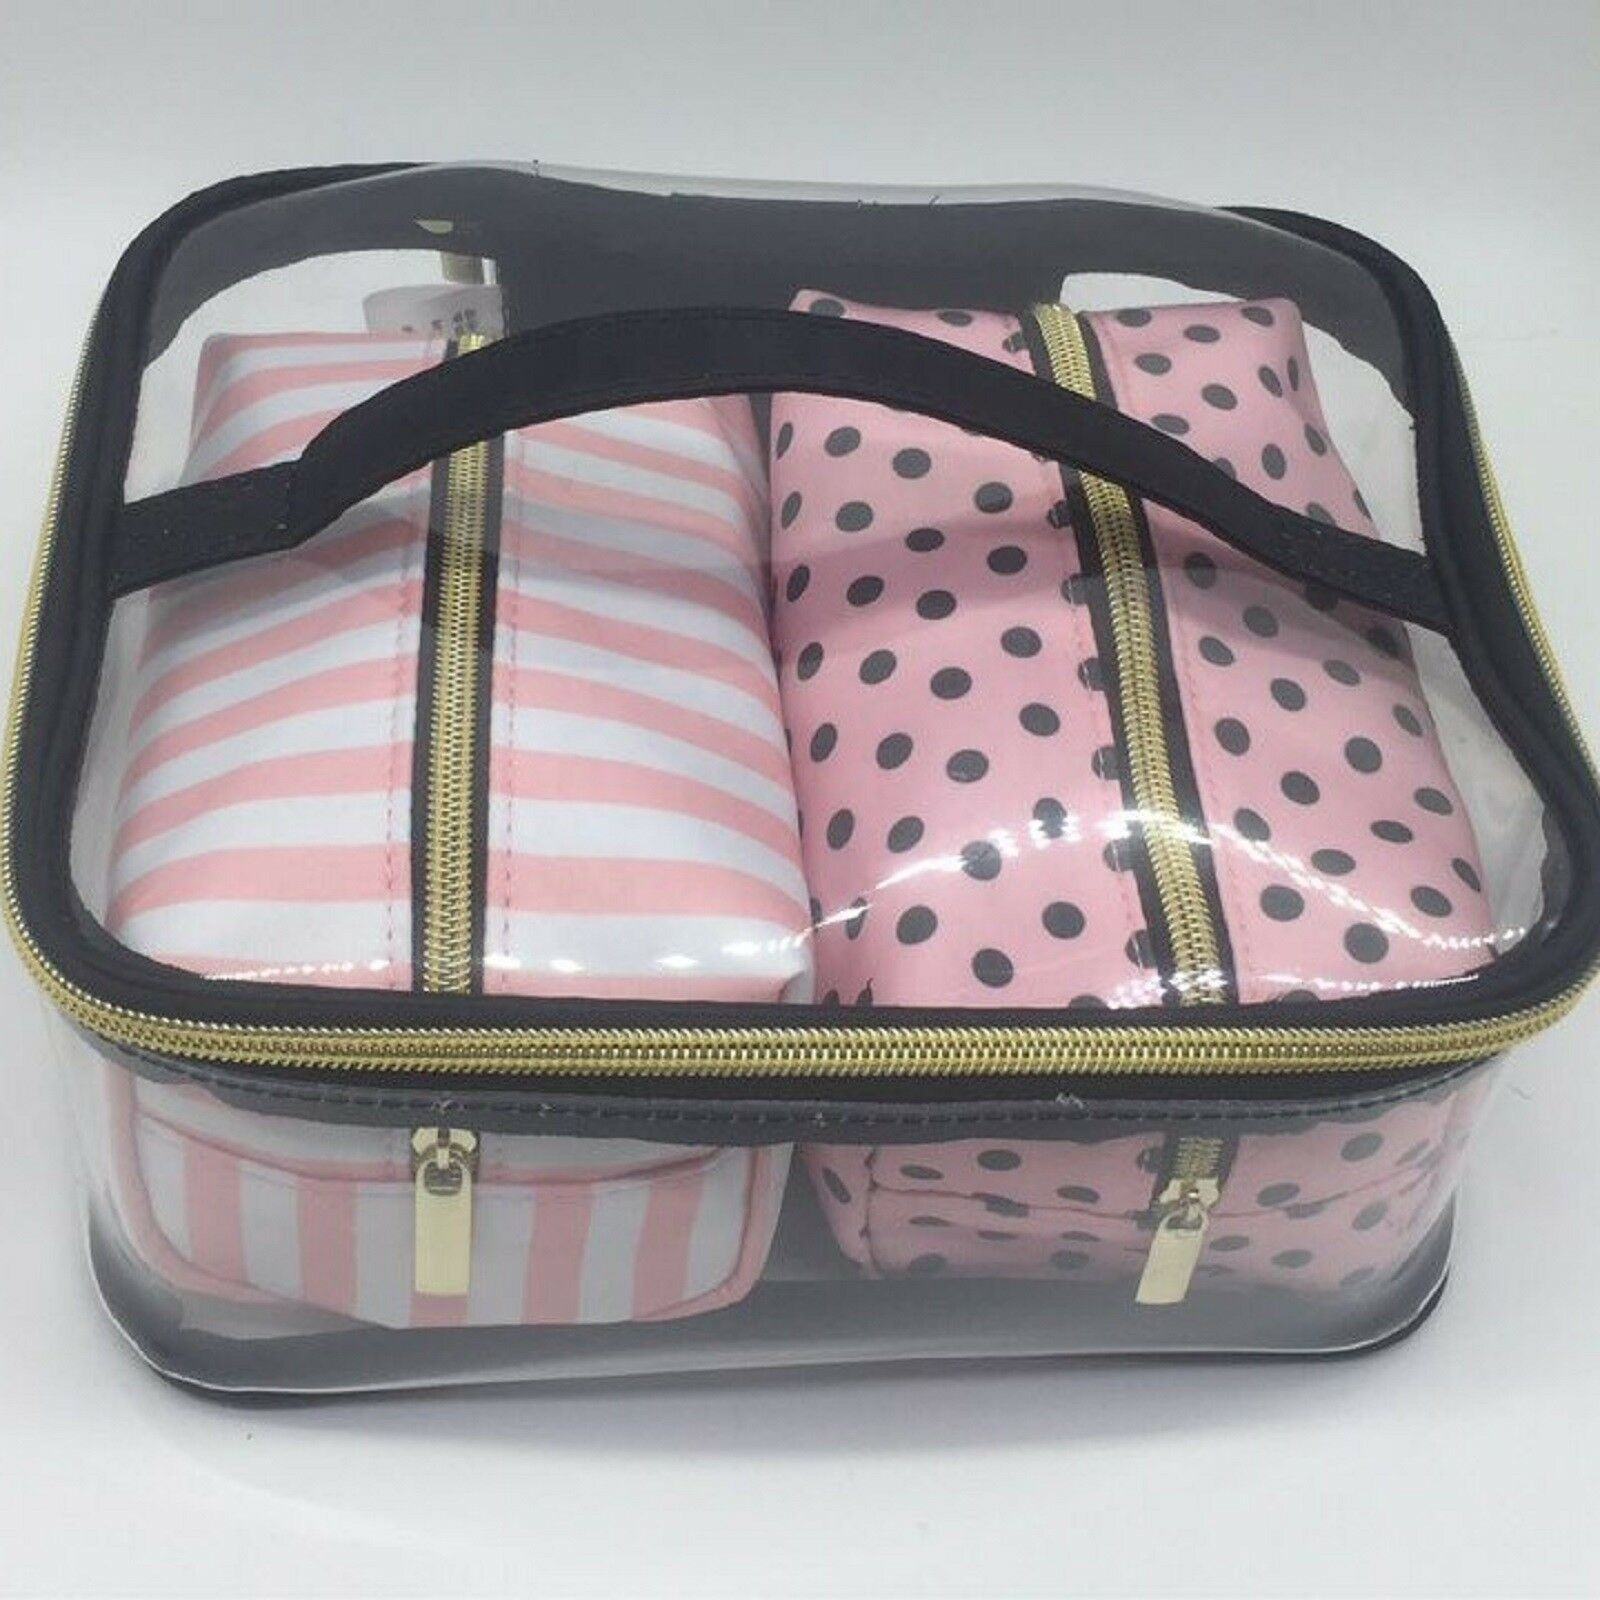 コスメティック バッグ トラベル オーガナイザー トイレタリー バッグ セット ピンク メイクアップ ストレージ ハンギング バッグ